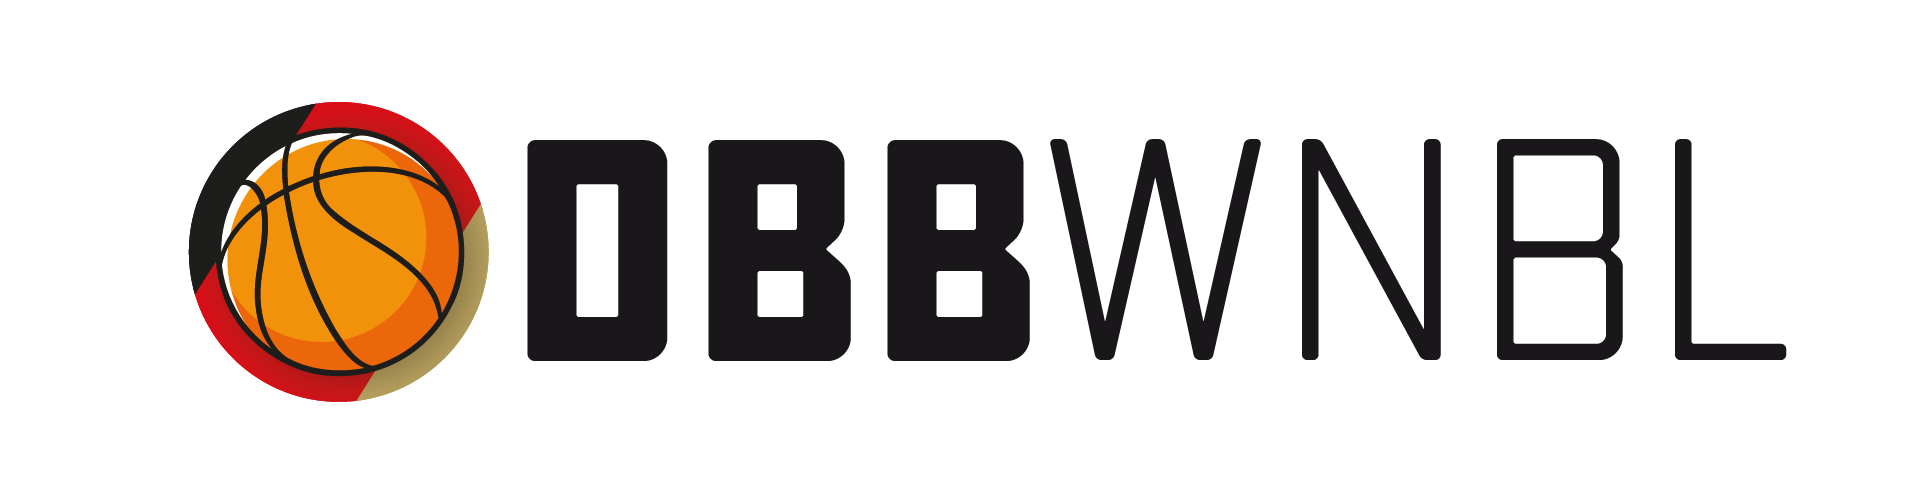 DBB_WNBL_Logo_landscape_positive_cut